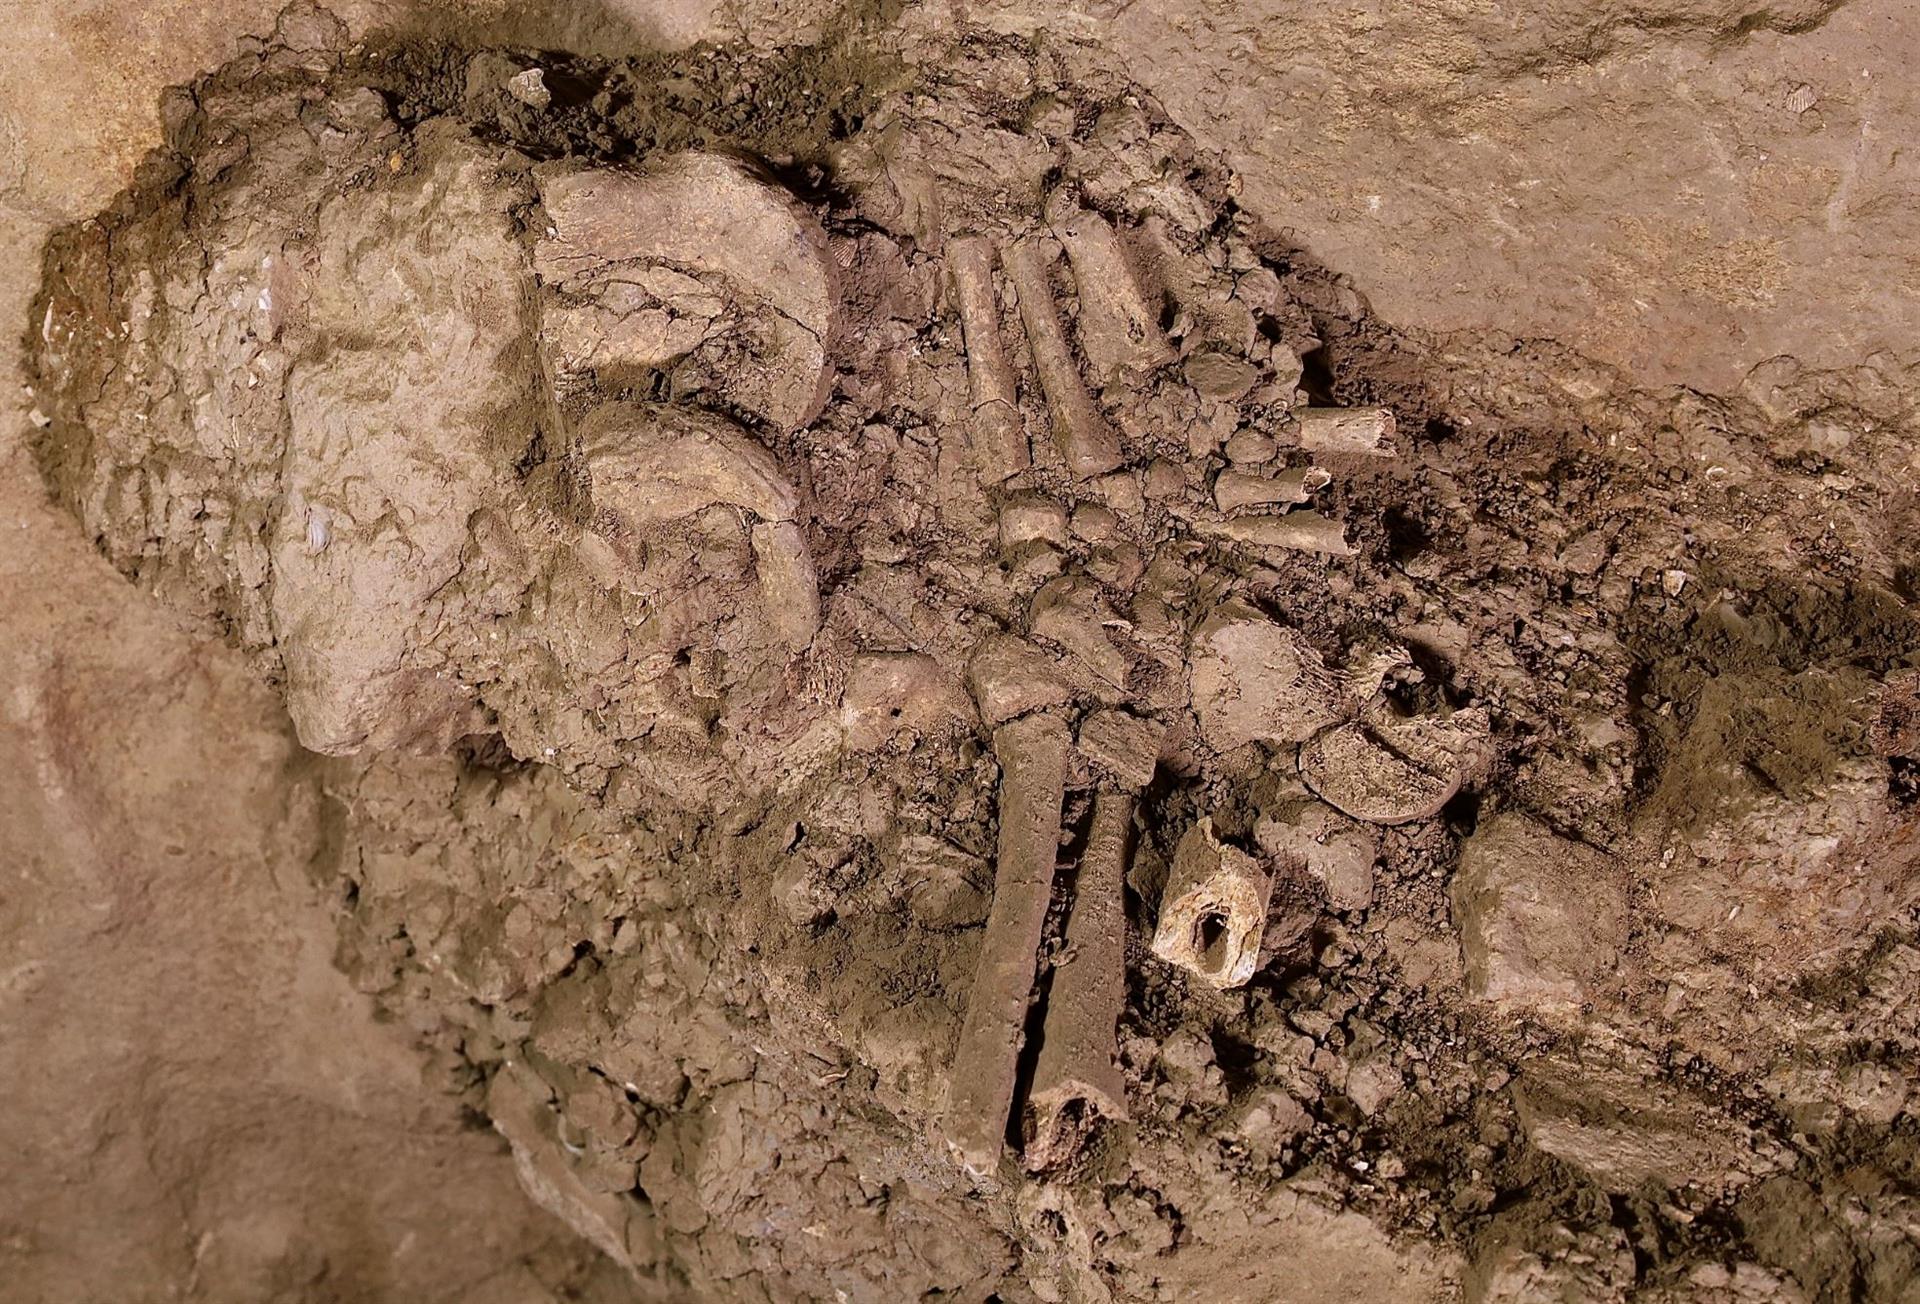 Hallan restos humanos de una posible tumba de hace 10.000 años en Azerbaiyán